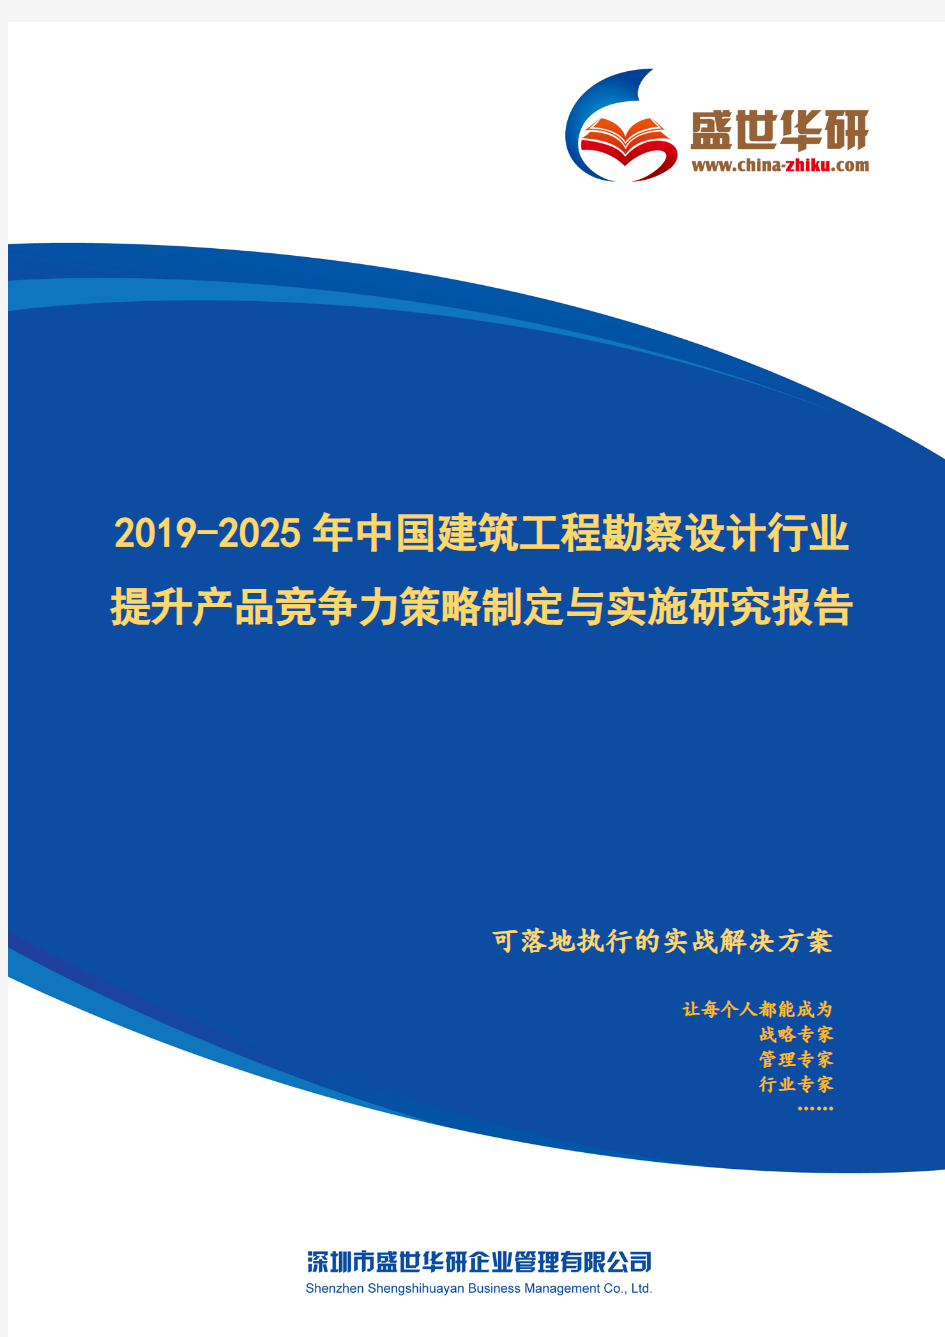 【完整版】2019-2025年中国建筑工程勘察设计行业提升产品竞争力策略制定与实施研究报告